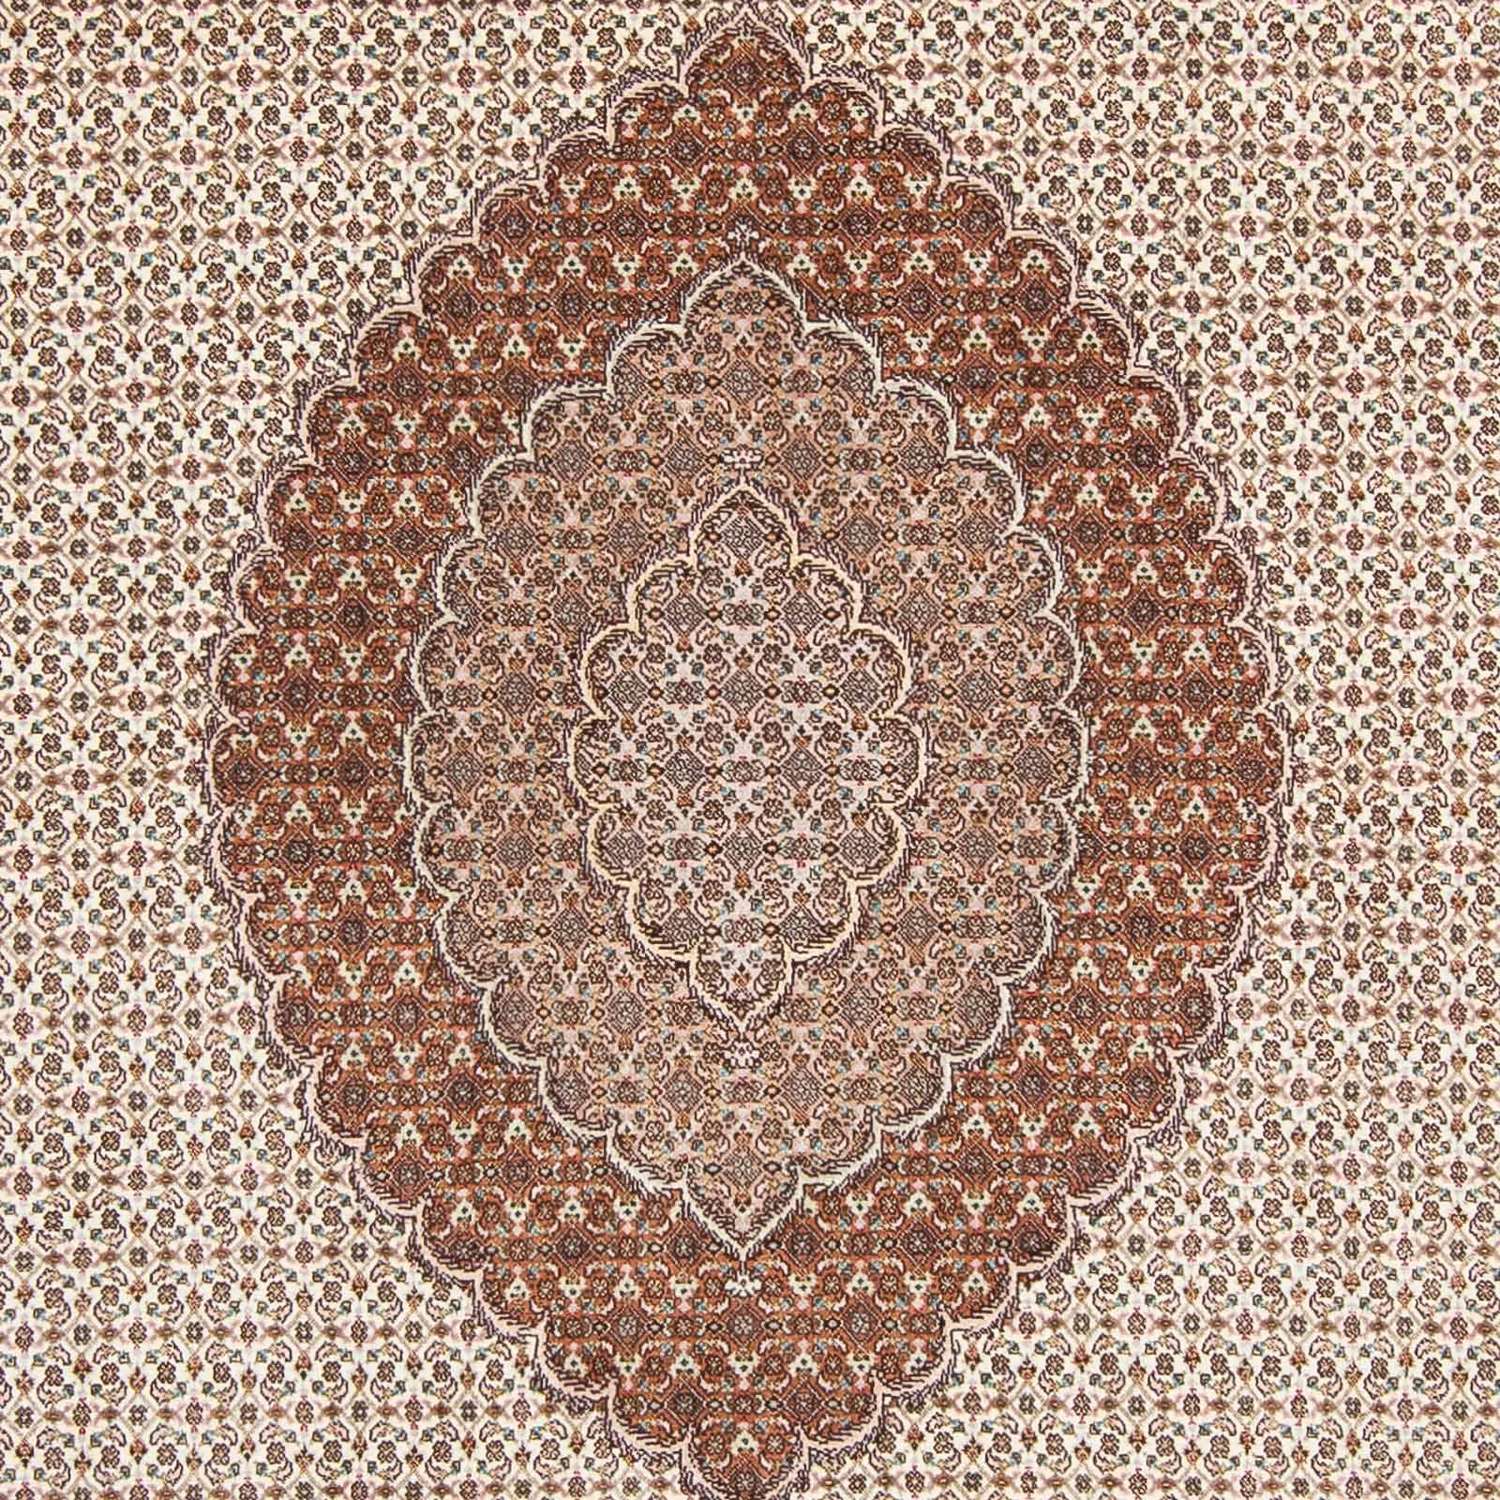 Persisk teppe - Tabriz - Royal - 316 x 198 cm - beige